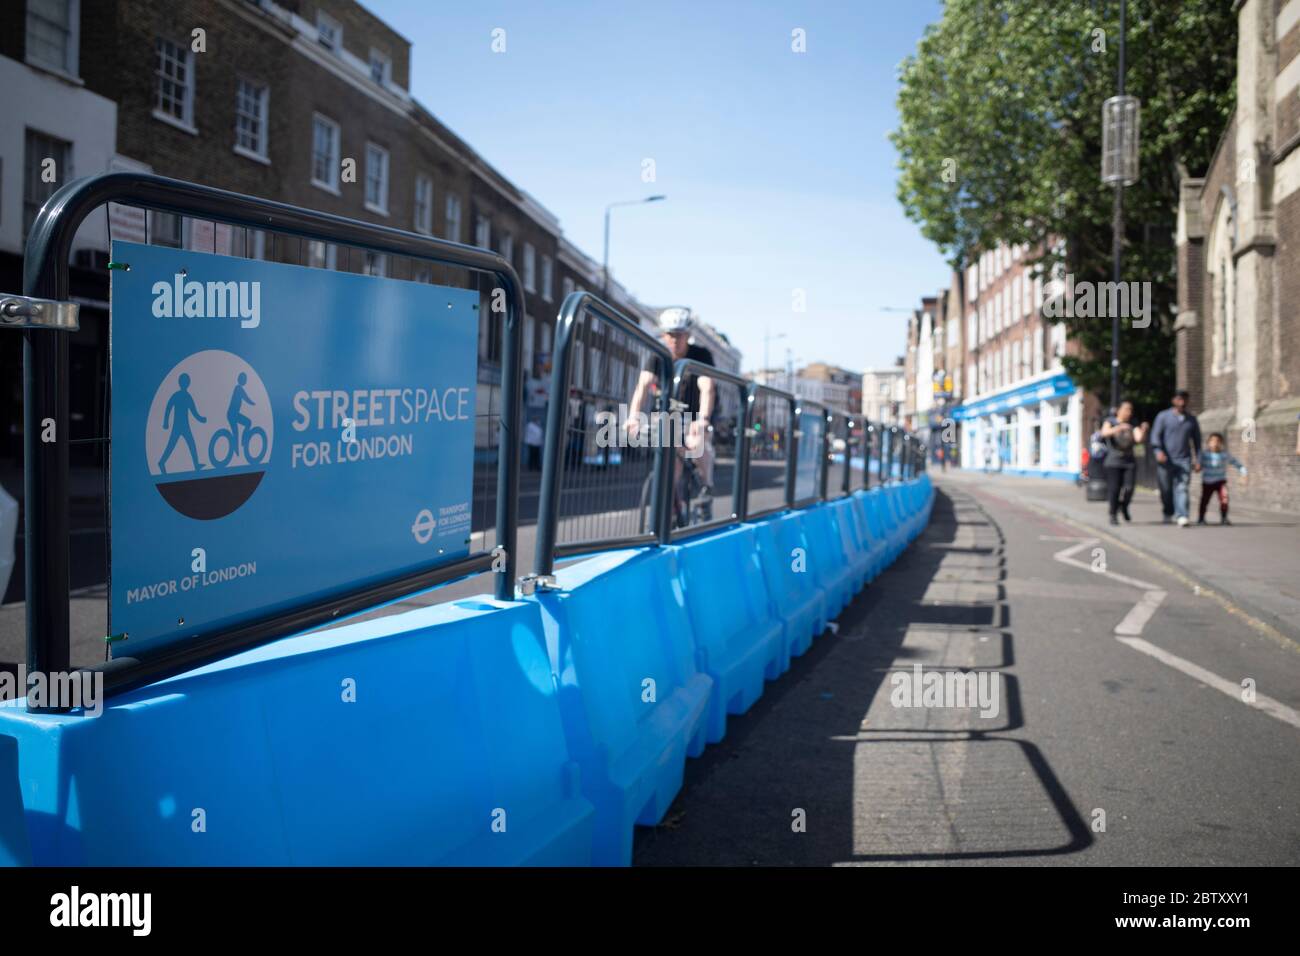 Londra, Camden Town, 29 maggio 2020, in preparazione per alleviare la pandemia blocco giù Londra il sindaco Sadiq Khan introduce l'allargamento della pavimentazione dello spazio di strada Foto Stock